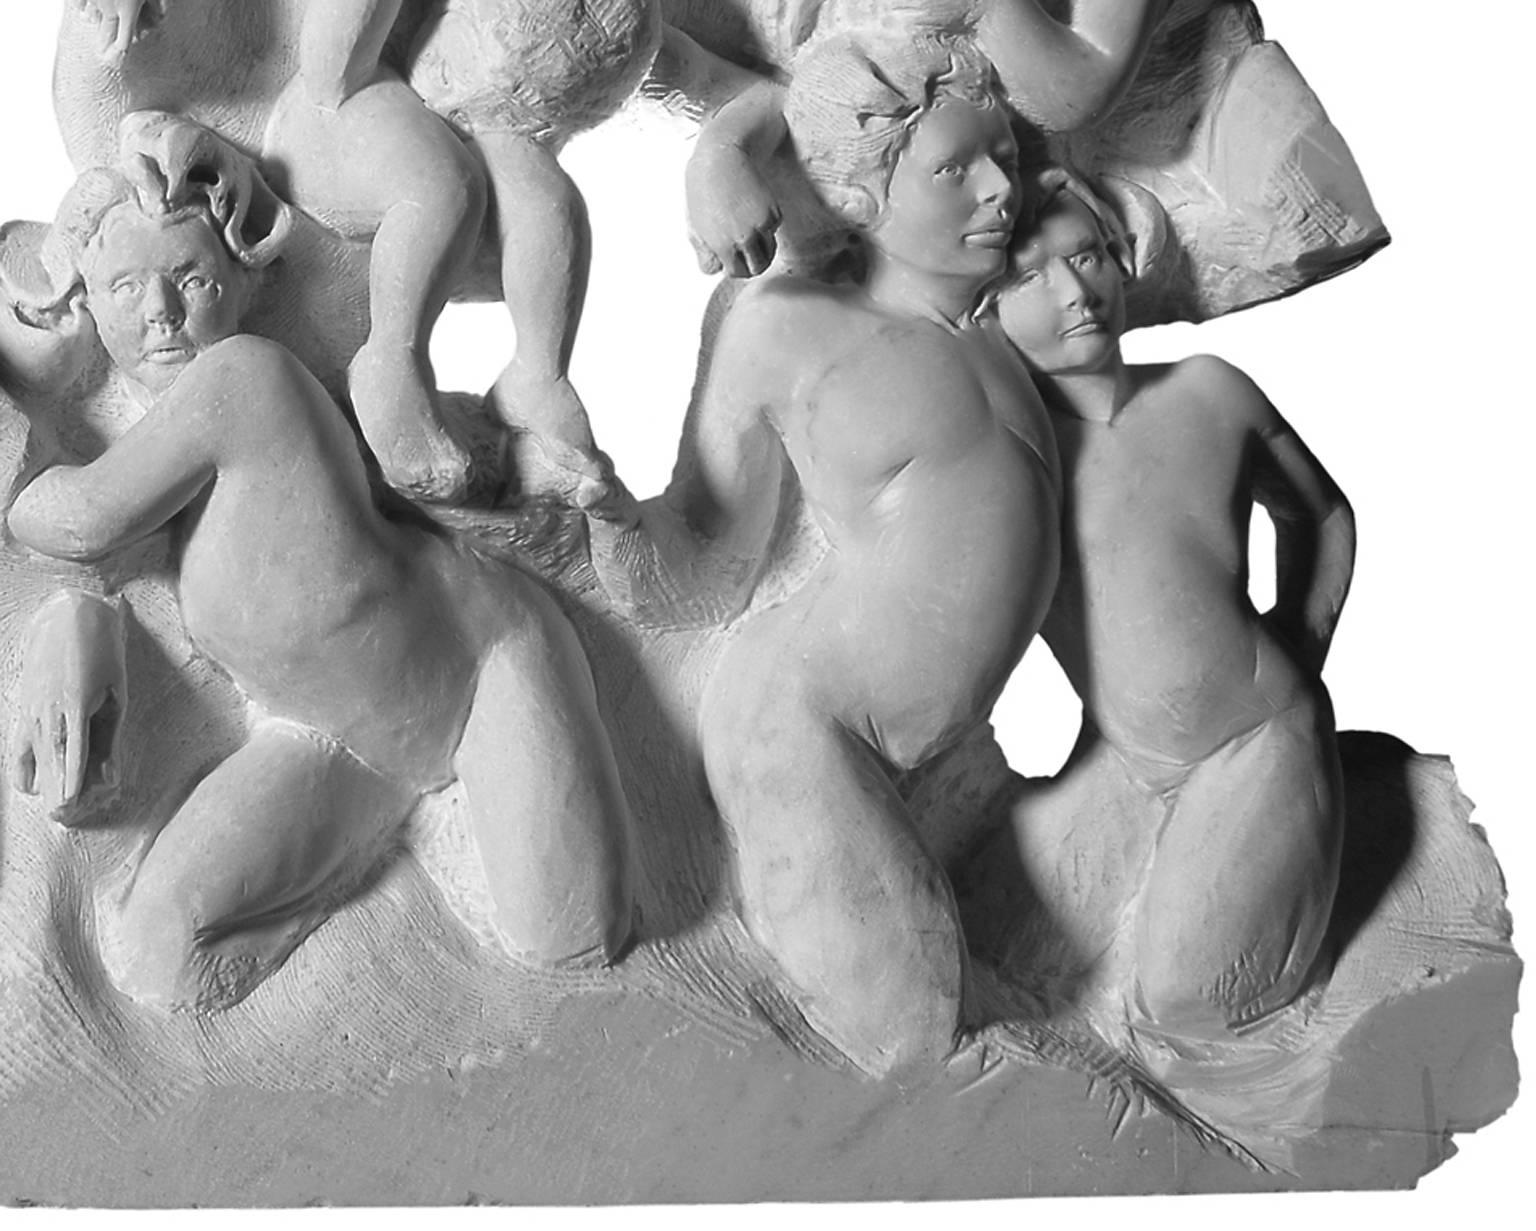 DANZA (Danza) de Lorenzo Vignoli
impactante relieve de friso de mármol de Carrara tallado a mano por el escultor italiano contemporáneo Lorenzo Vignoli, que incorpora hipnotizantes referencias clásicas e influencias mediterráneas